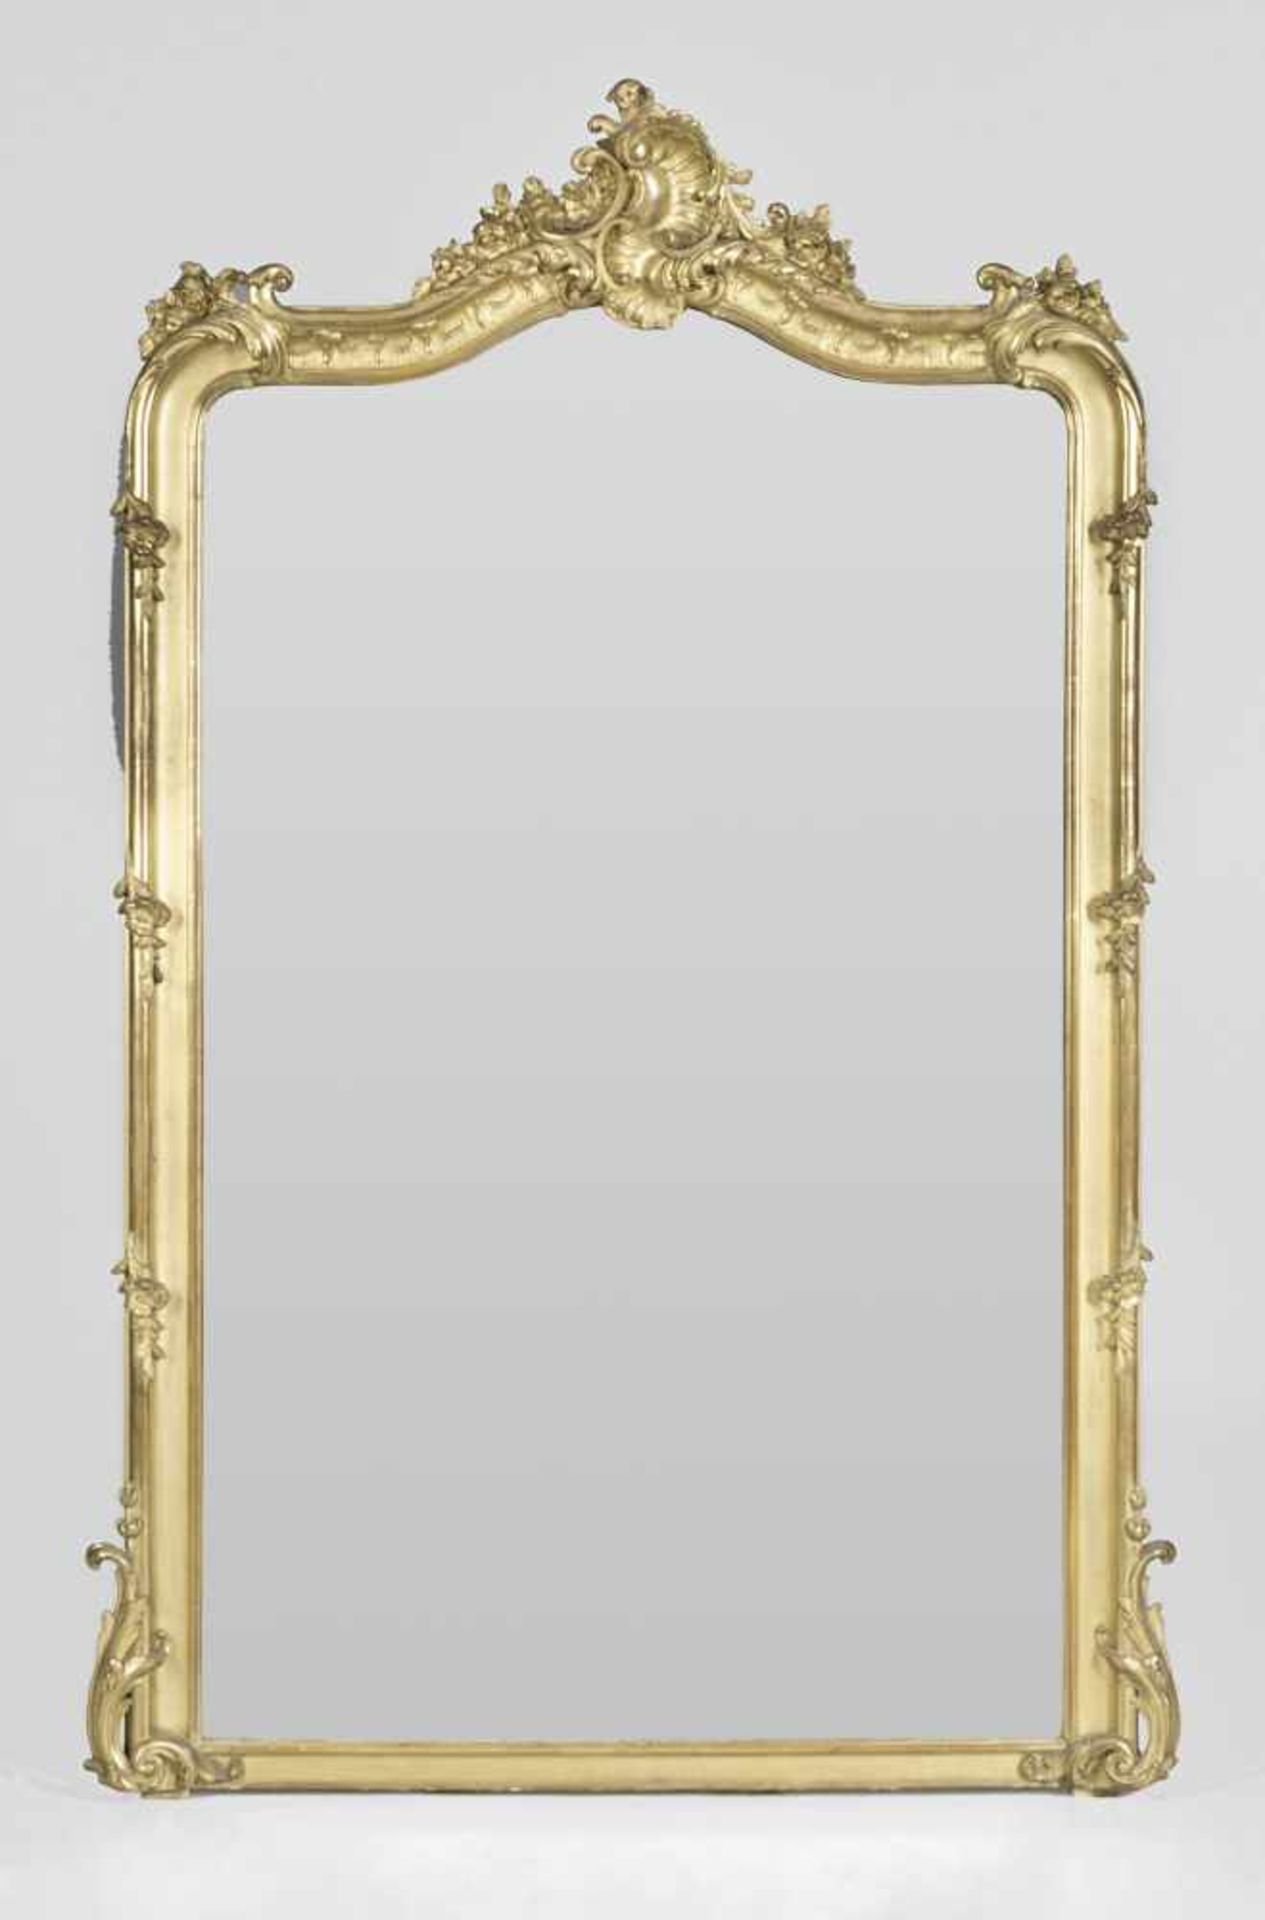 Großer Belle Epoque Trumeau-SpiegelHolz, geschnitzt, gefasst und vergoldet. Hochrechteckige,